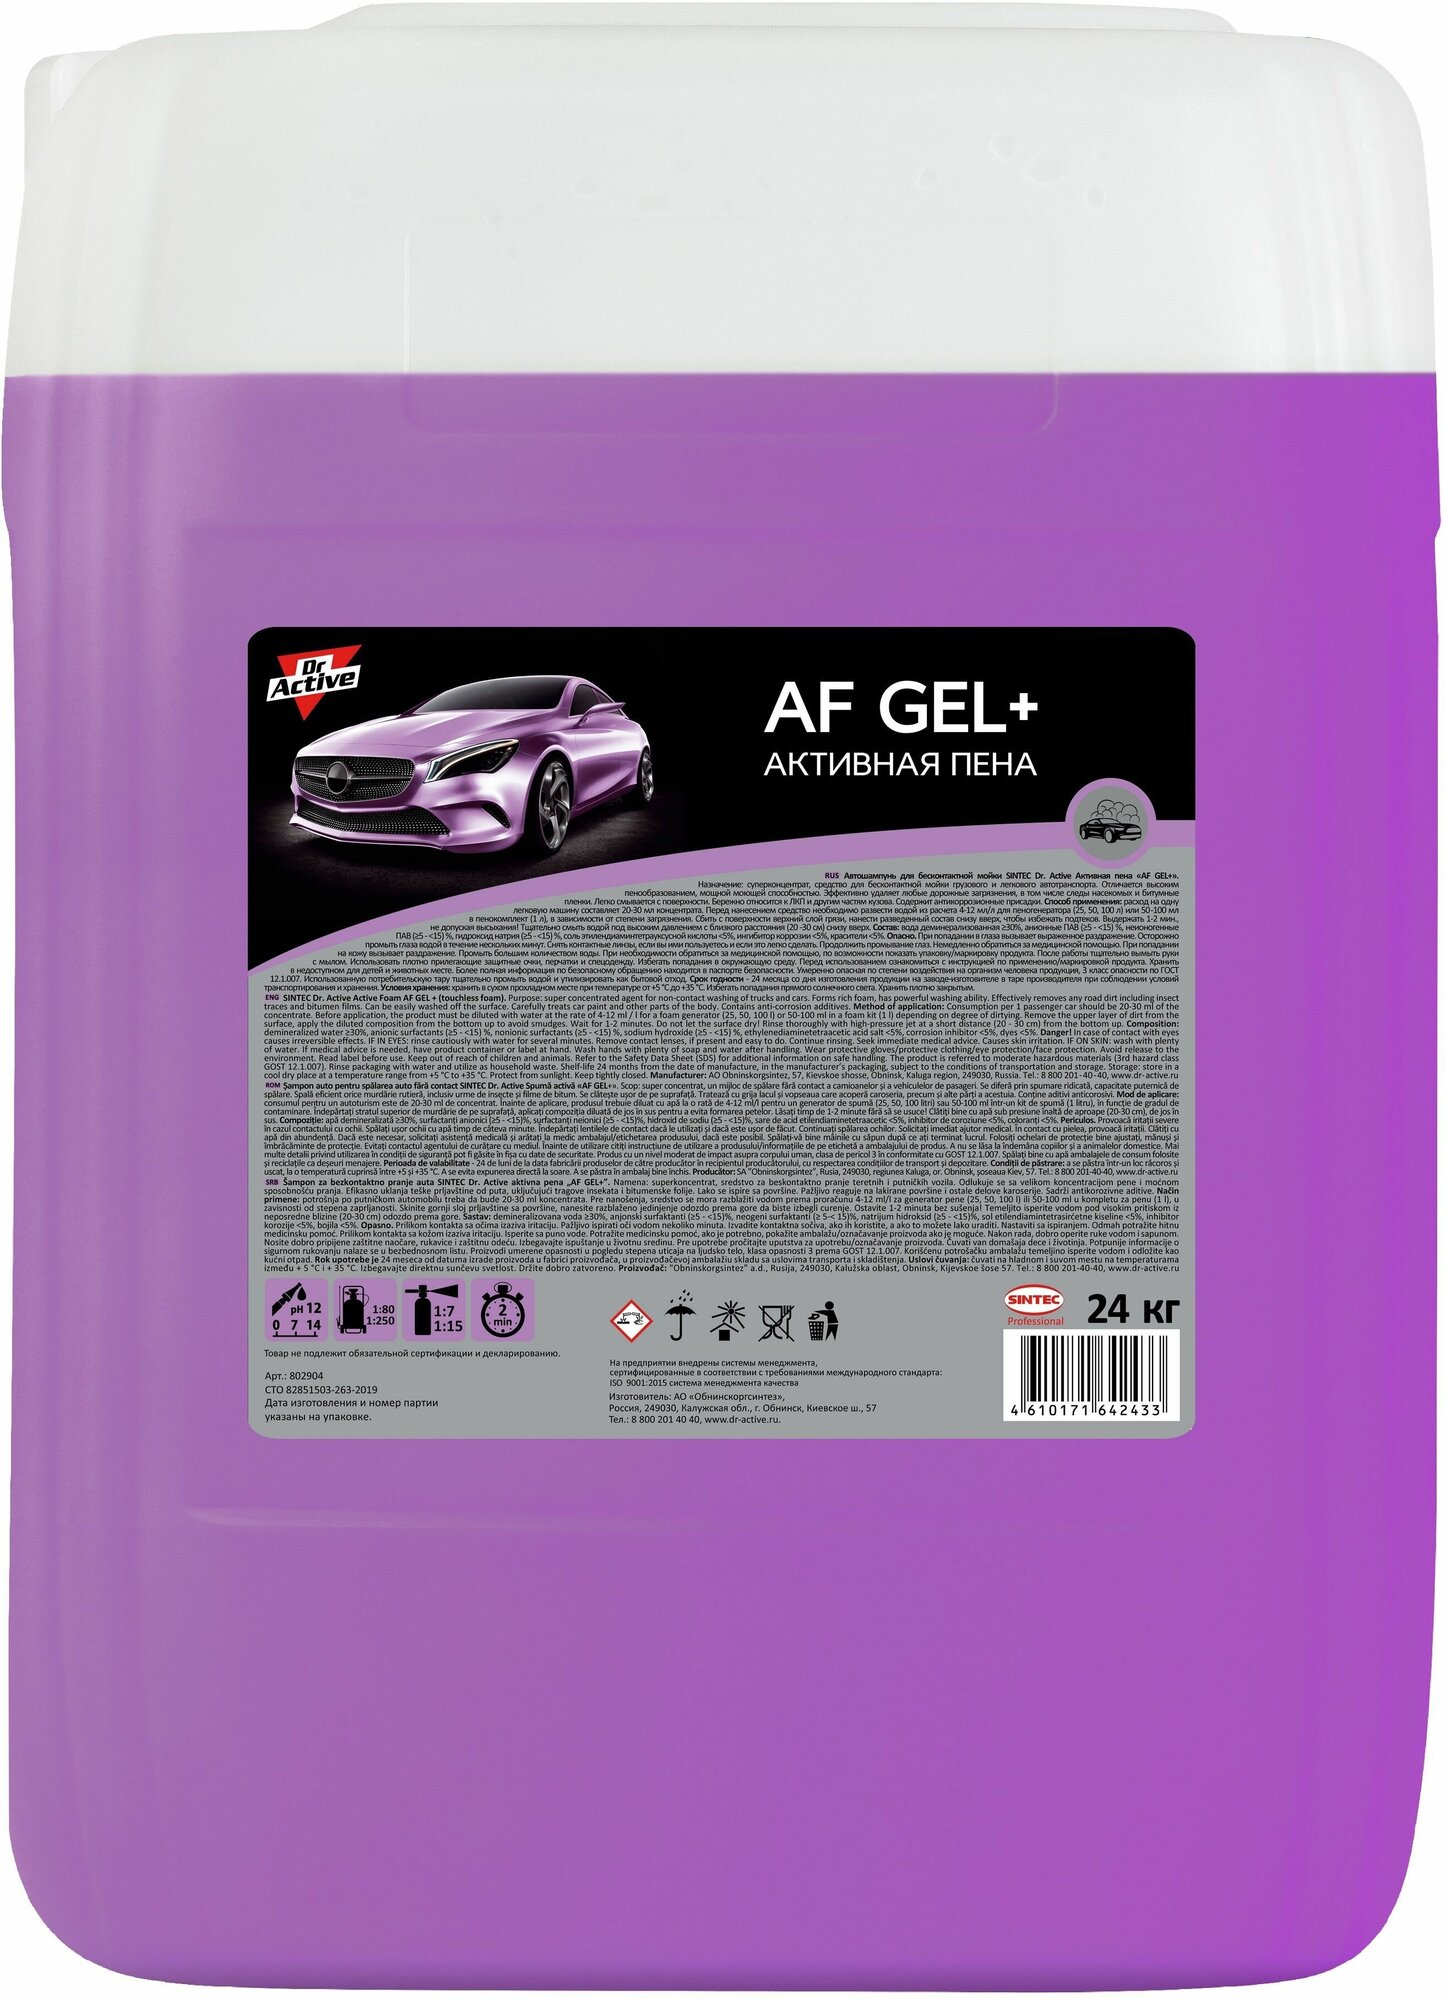 Автошампунь Dr. Active "AF Gel +" гелевая формула для бесконтактной мойки автомобиля, концентрат 24 кг